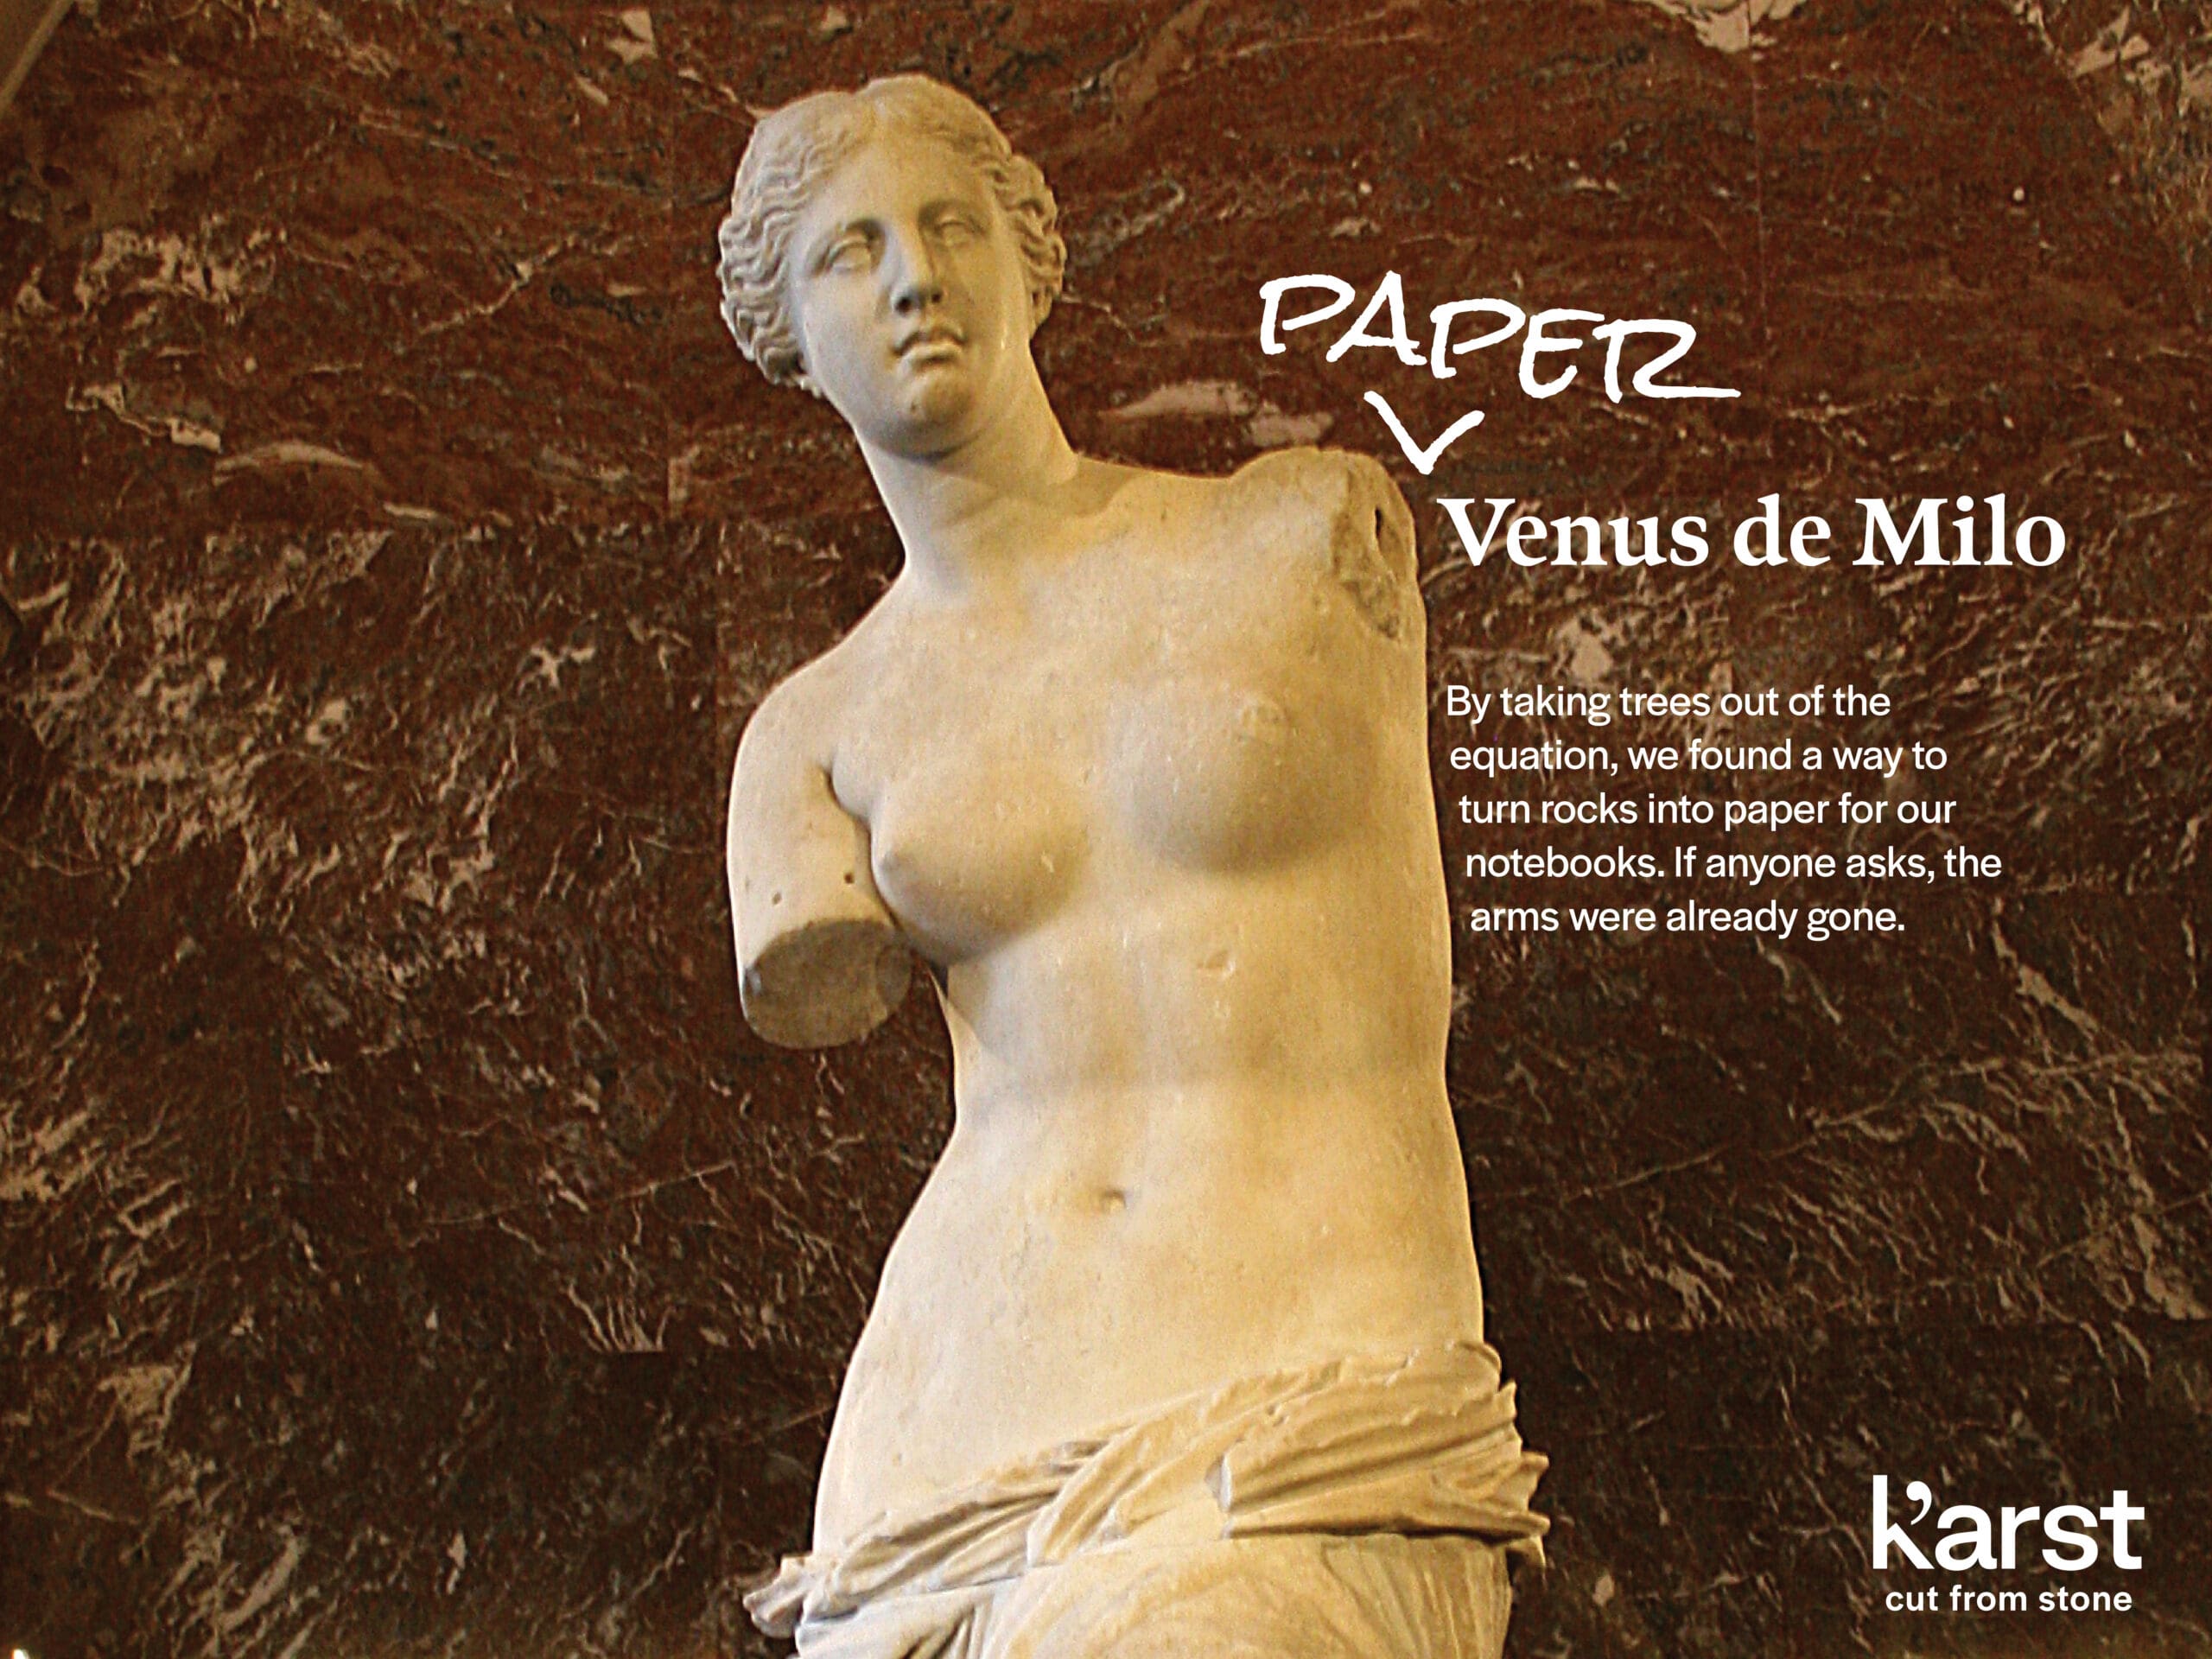 Photo of the Venus de Milo with white text that says "Paper Venus De Milo"